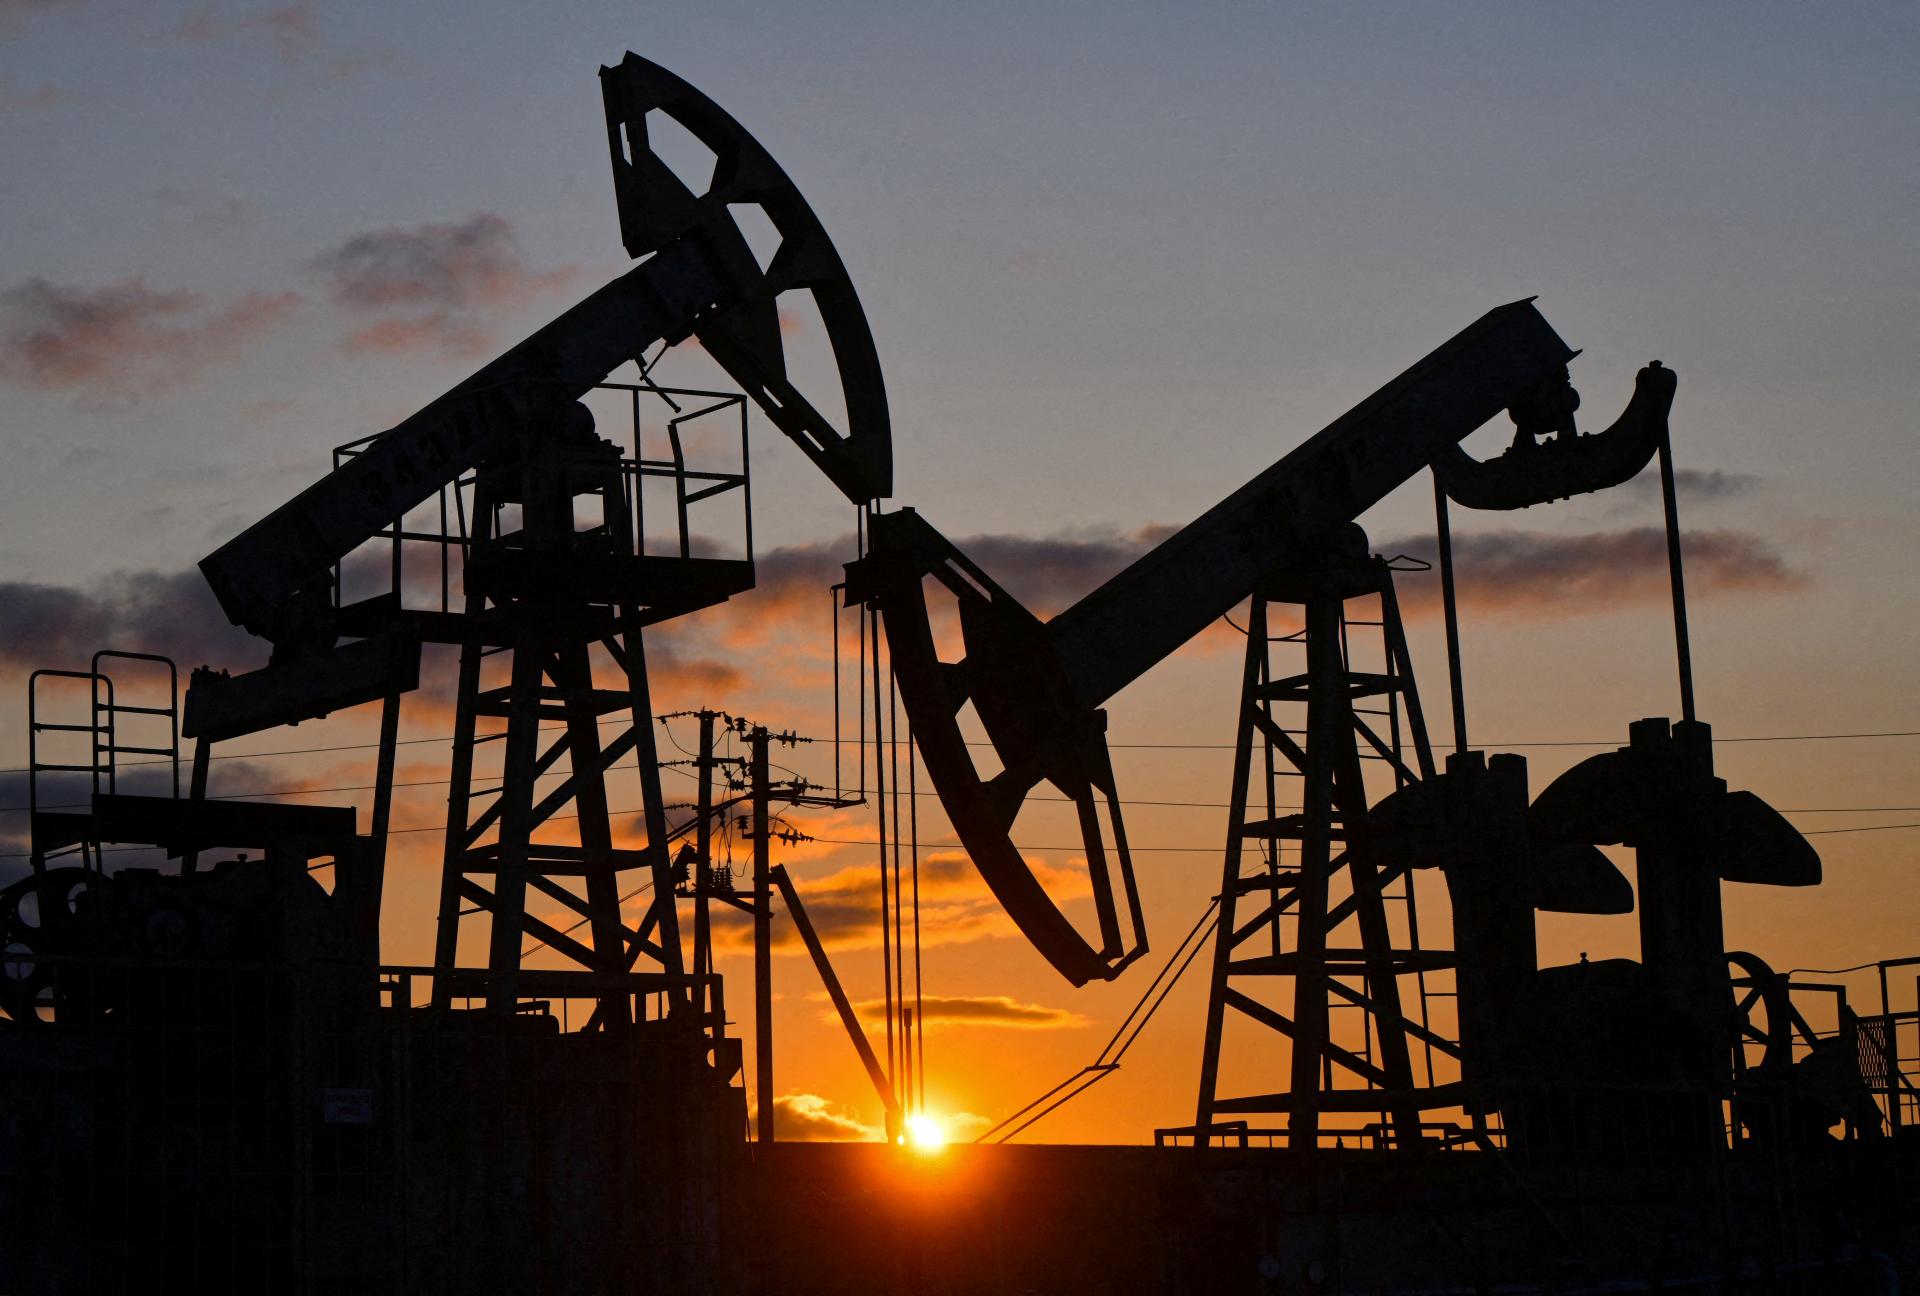 Čaká nás ropná kríza? Zníženie jej ťažby spôsobí do konca roka narušenie dodávok, varujú energetici